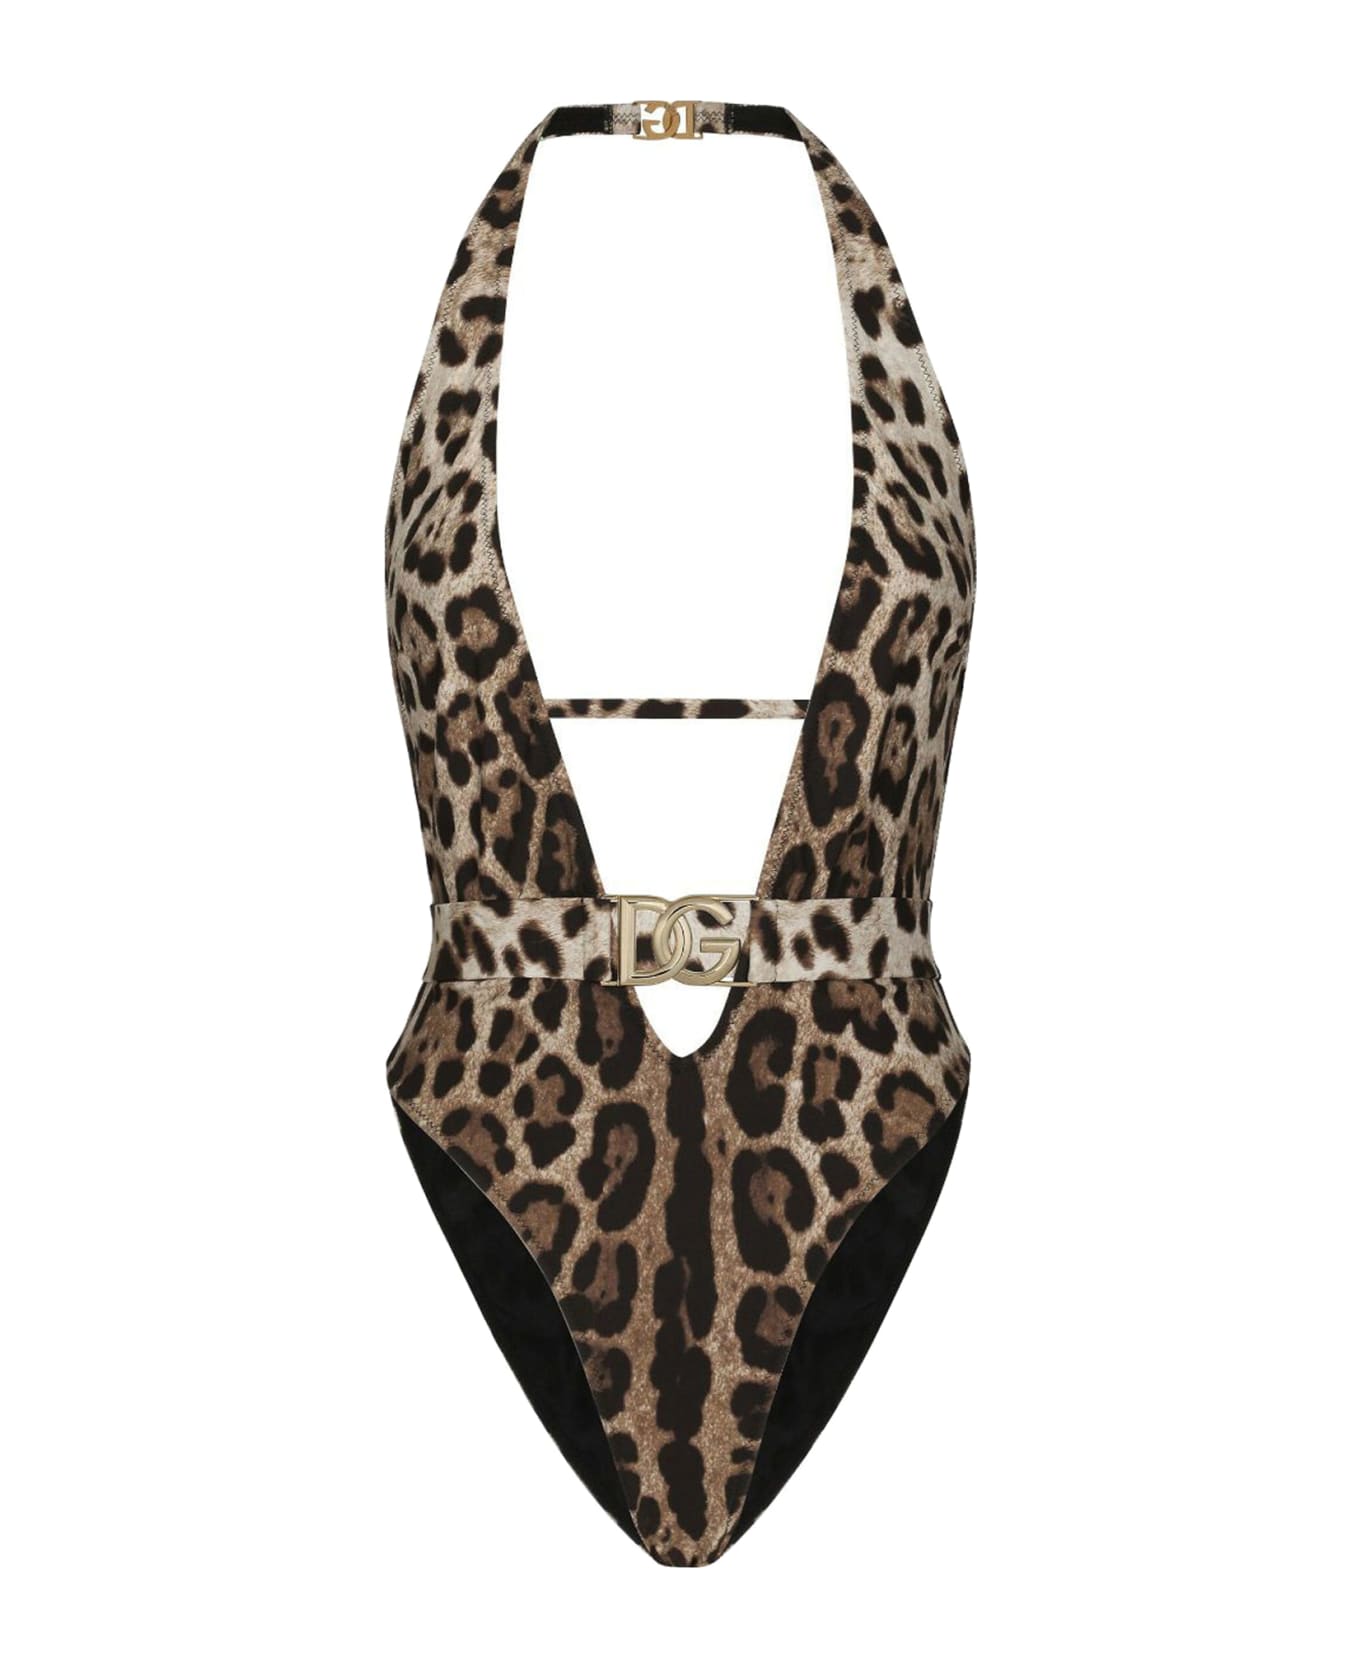 Dolce & Gabbana One-piece Swimsuit - M Leo New